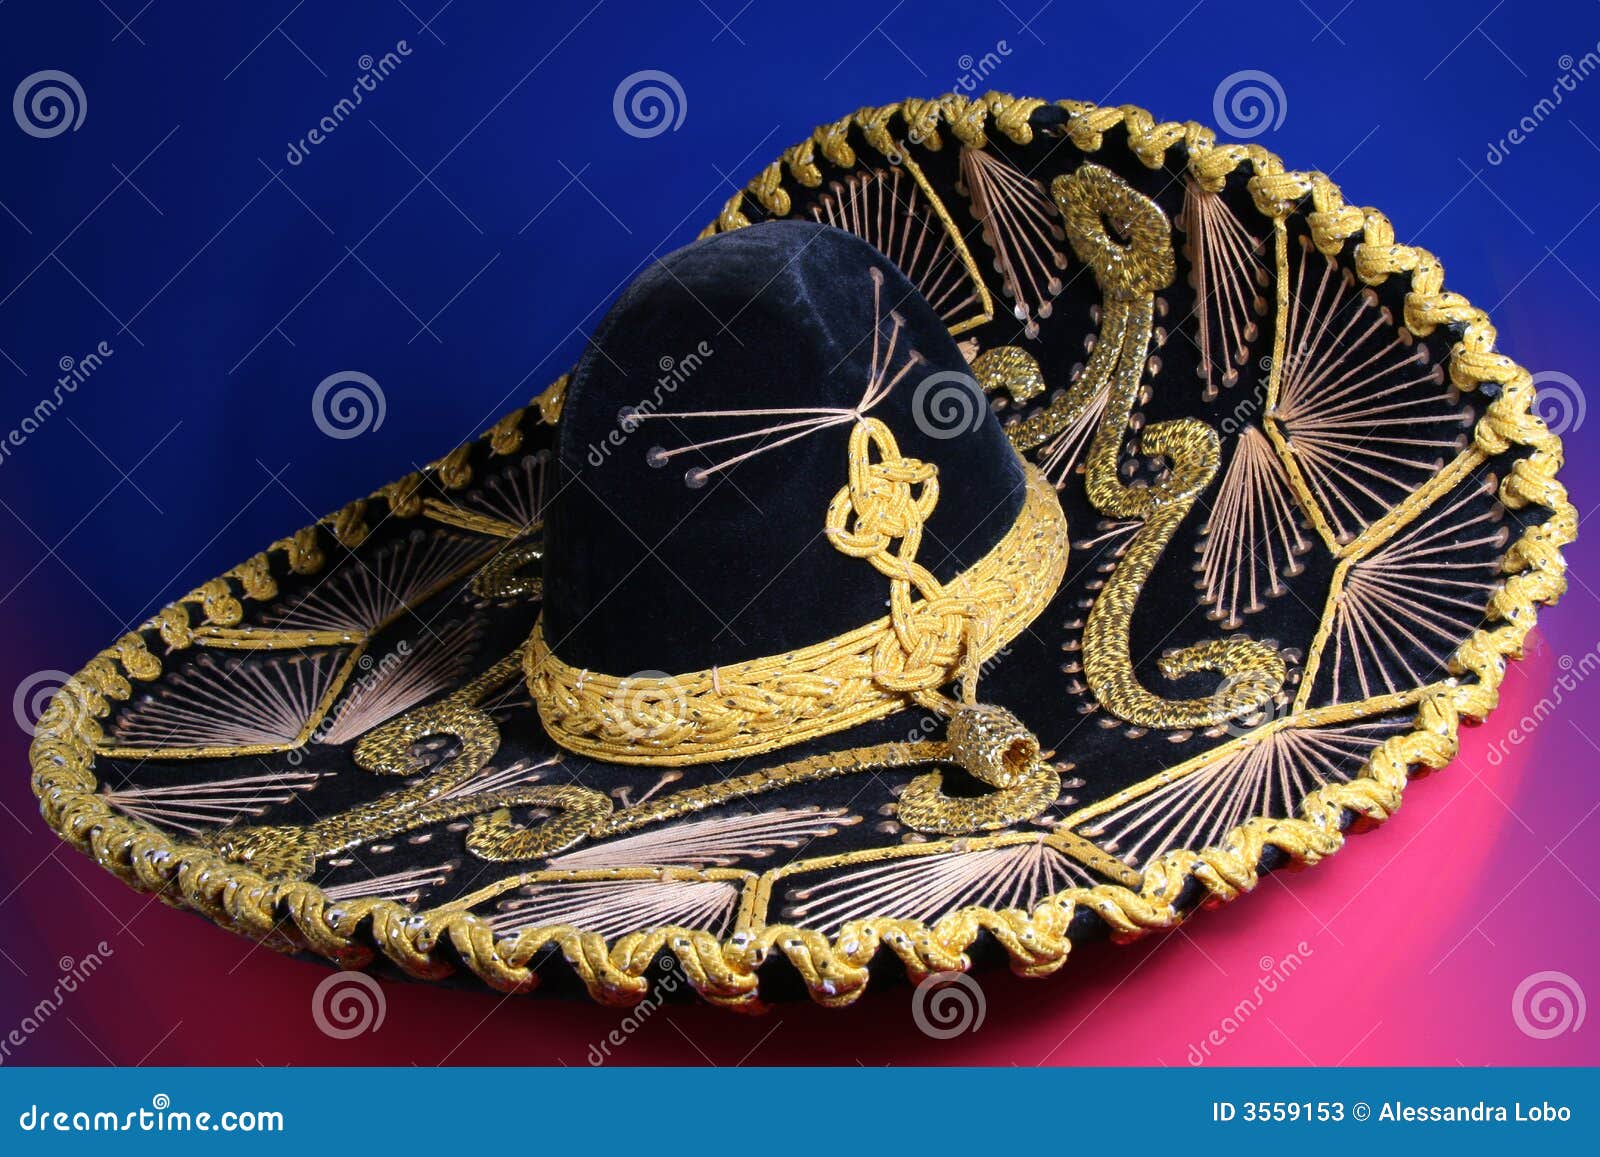 帽子墨西哥阔边帽 库存图片. 图片 包括有 帽子, 阔边帽, 墨西哥, 遗产, 传统, 德克萨斯人, 欢乐 - 2619649